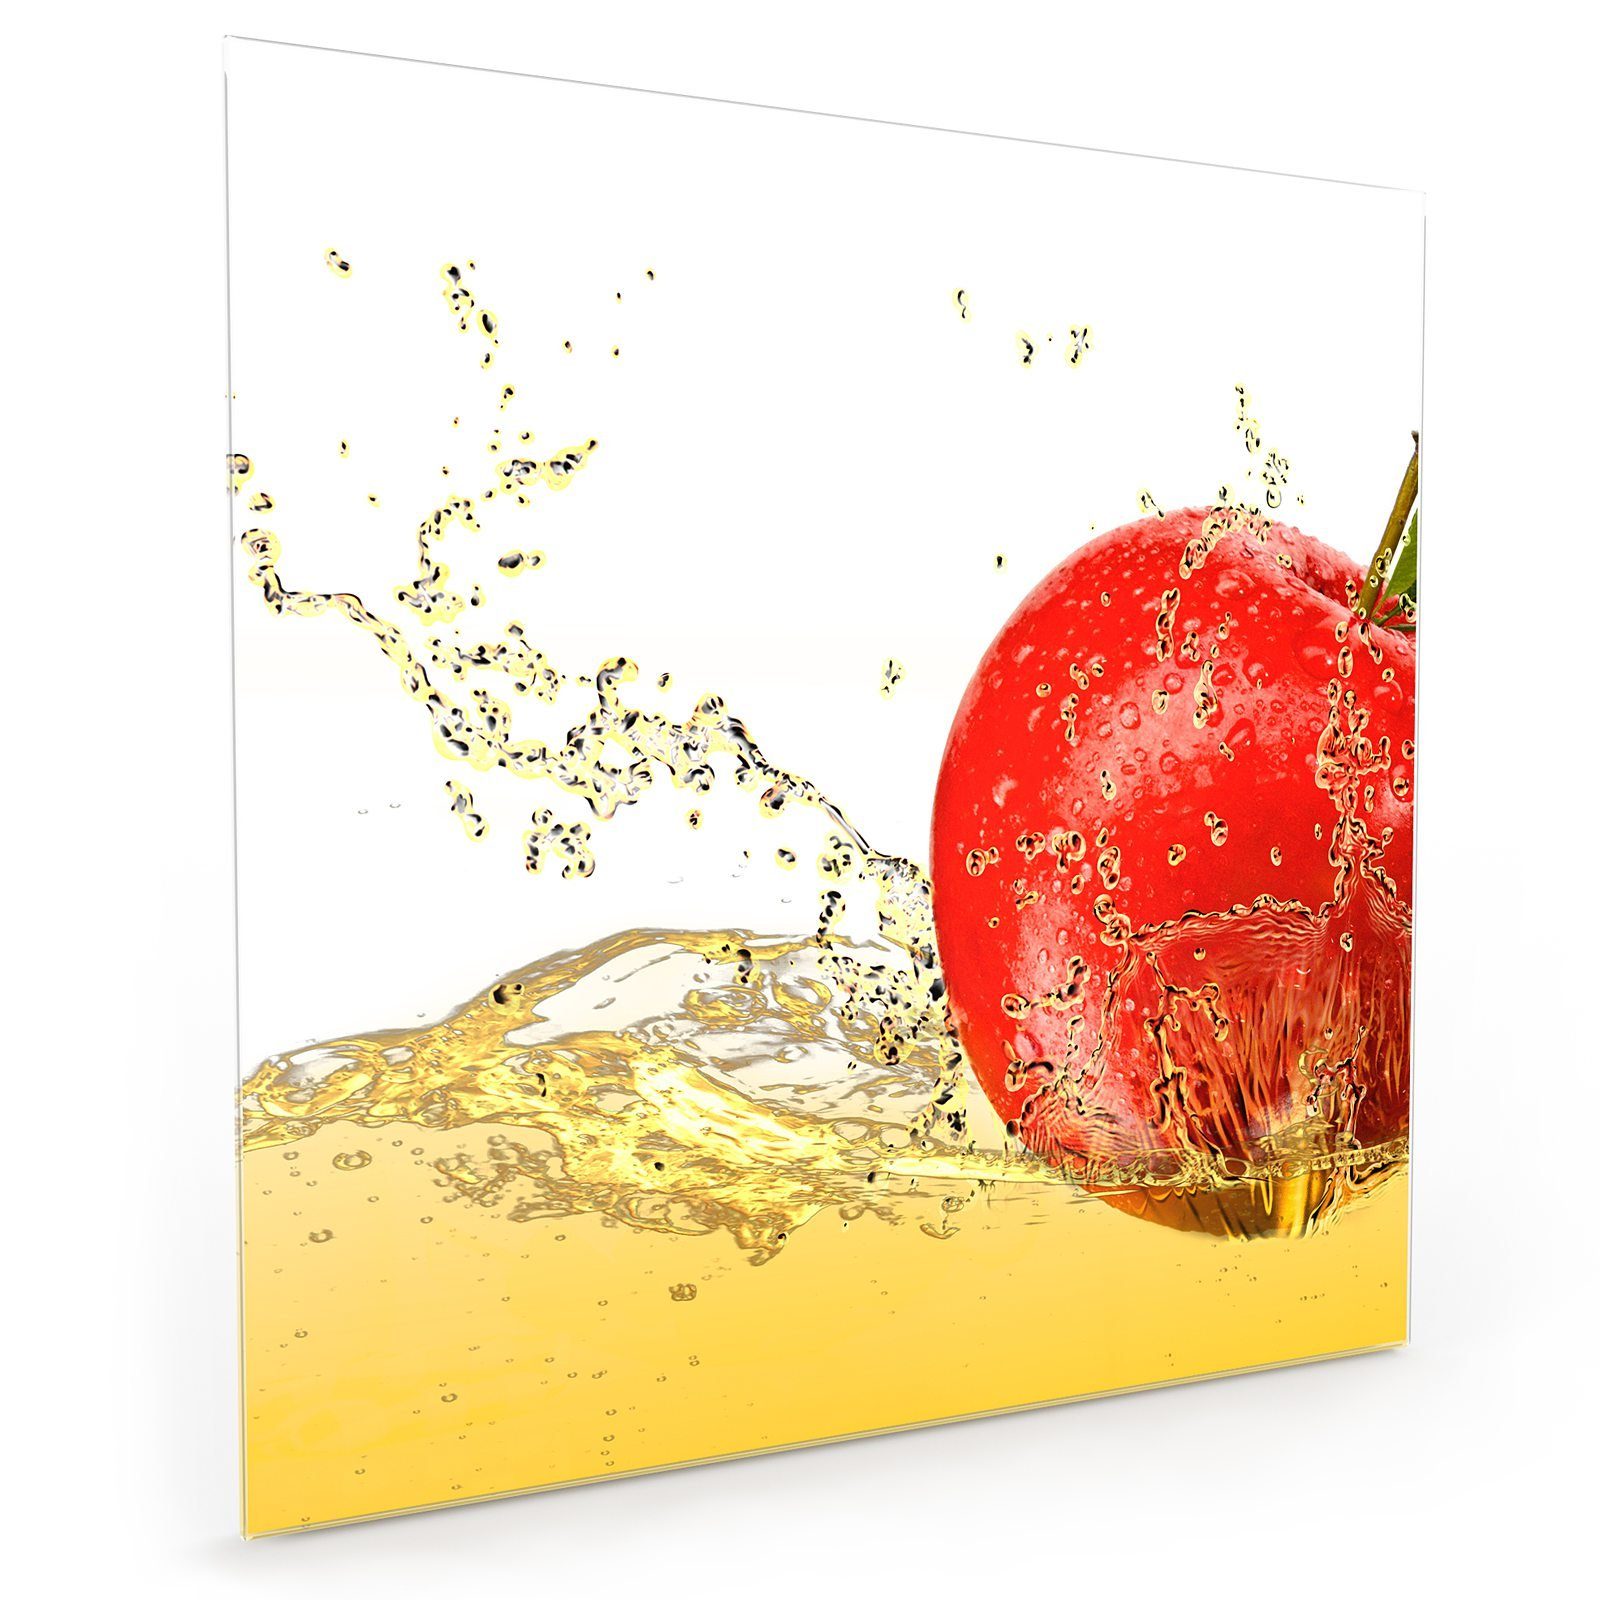 Primedeco Küchenrückwand Küchenrückwand Spritzschutz Glas Apfel Motiv mit Saft im